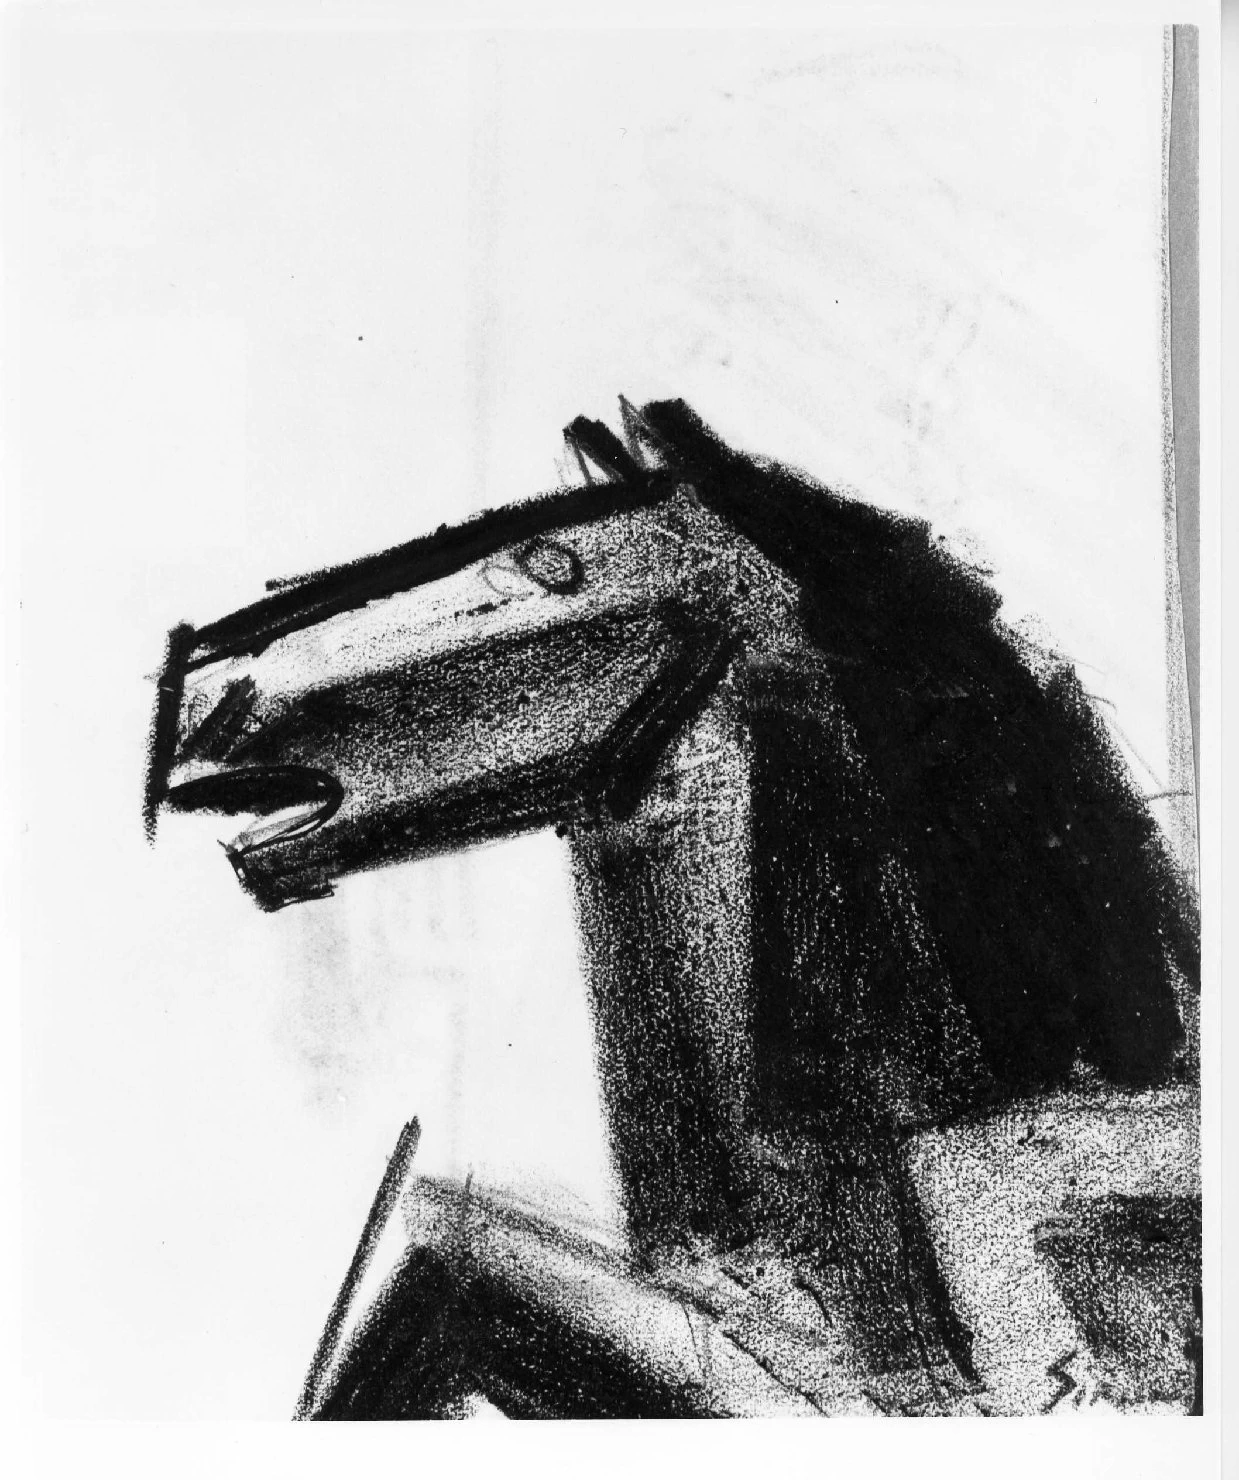  221-testa di cavallo -Museo di Castevecchio-Verona 